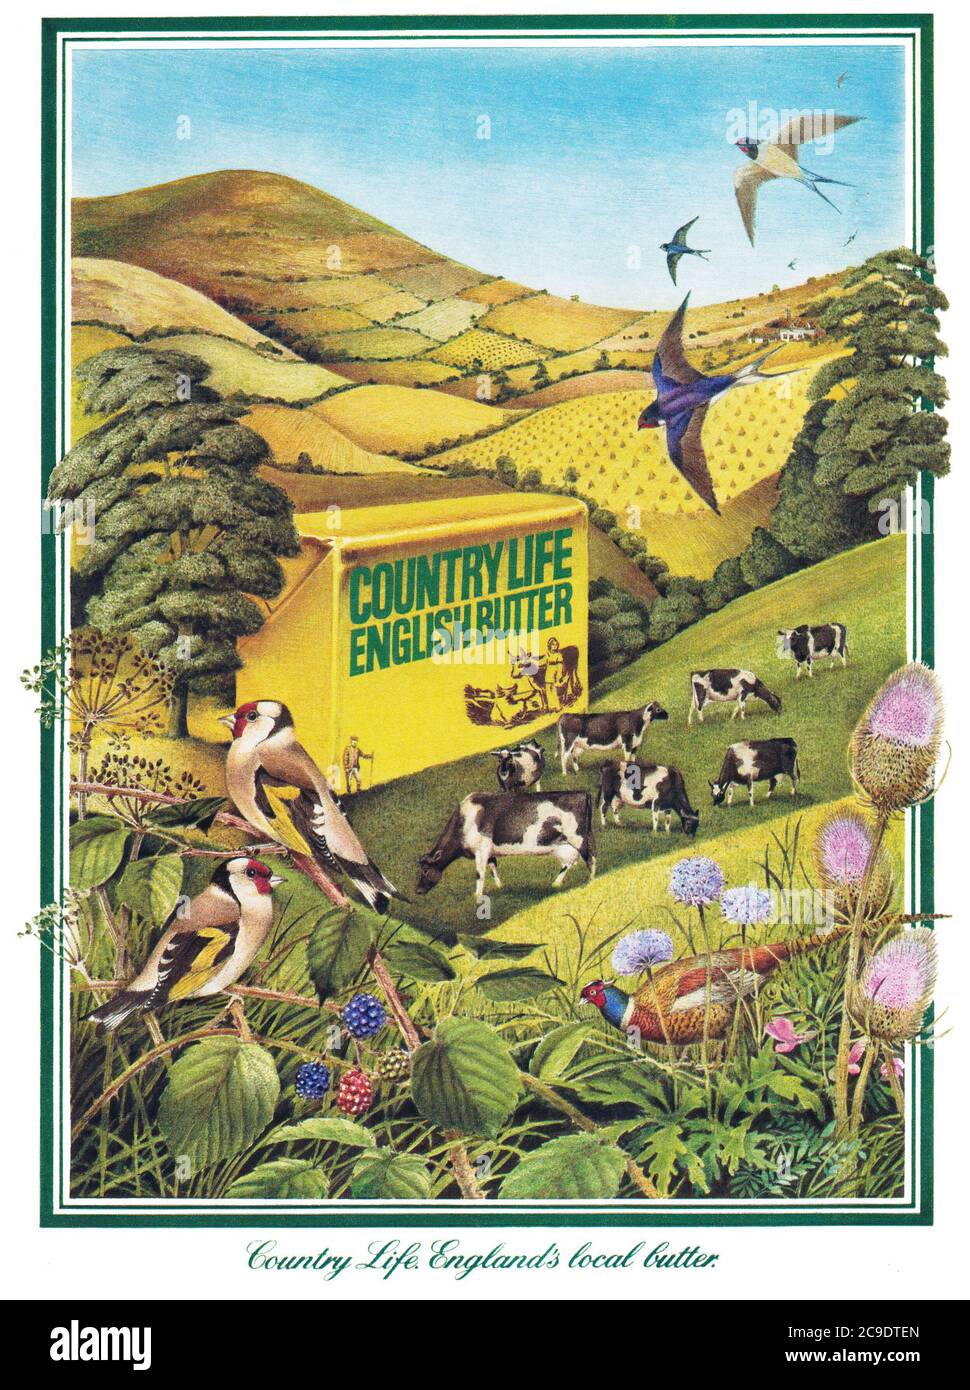 1975 Anuncio británico para Country Life English butter. Foto de stock